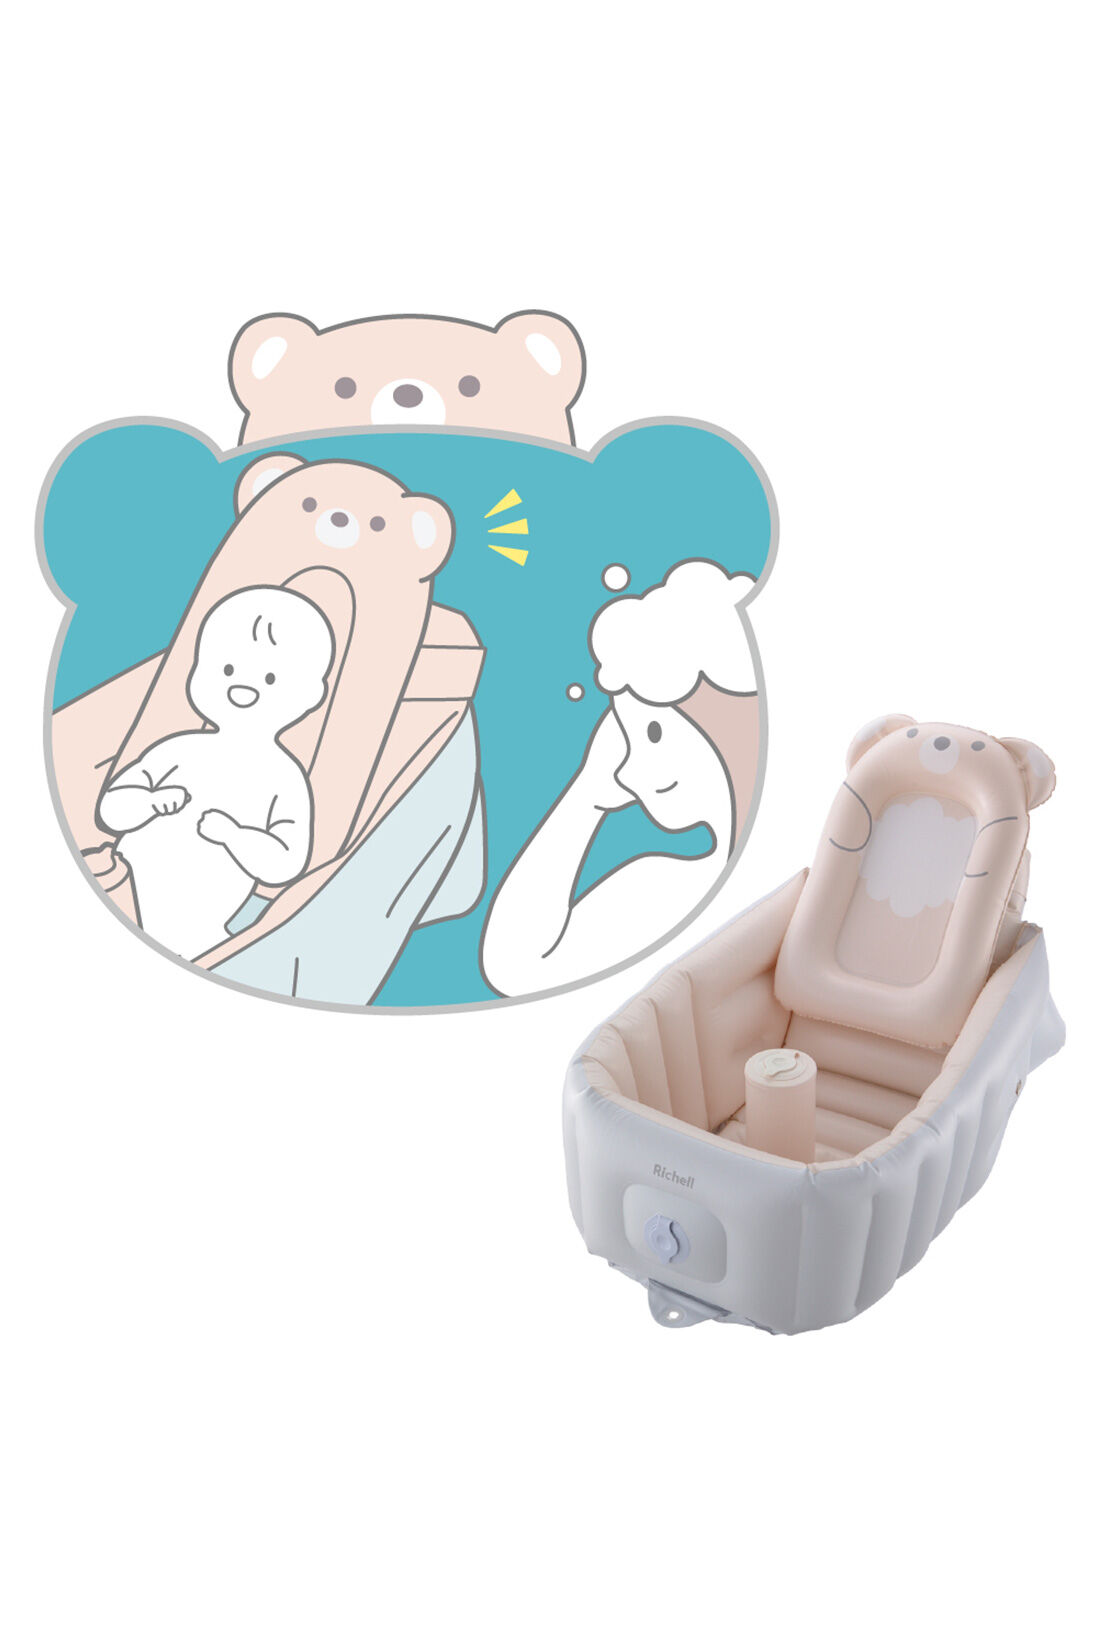 フェリシモMama|［Mama select］Richell　ふかふか ベビーバス ステップアップ＜ライトグレー＞|だっこクッションでお座り姿勢をサポートできるので、お風呂待ちに便利です。（2カ月頃〜）